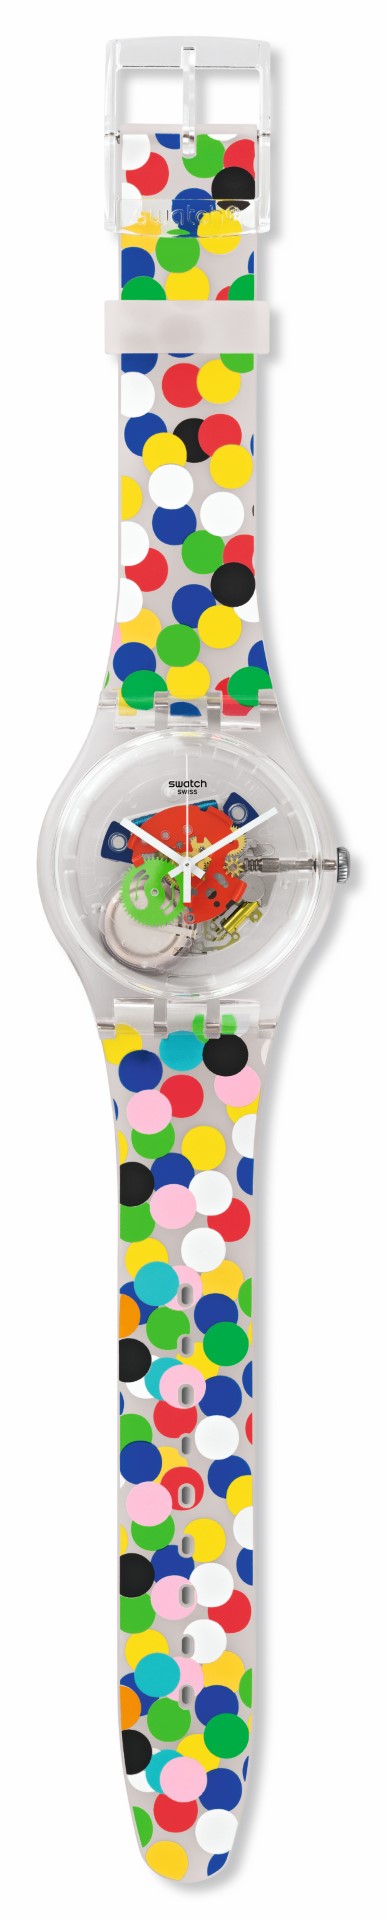 Swatch Alessandro Mendini: il nuovo orologio Art Special &#8220;Spot the Dot&#8221;, le foto